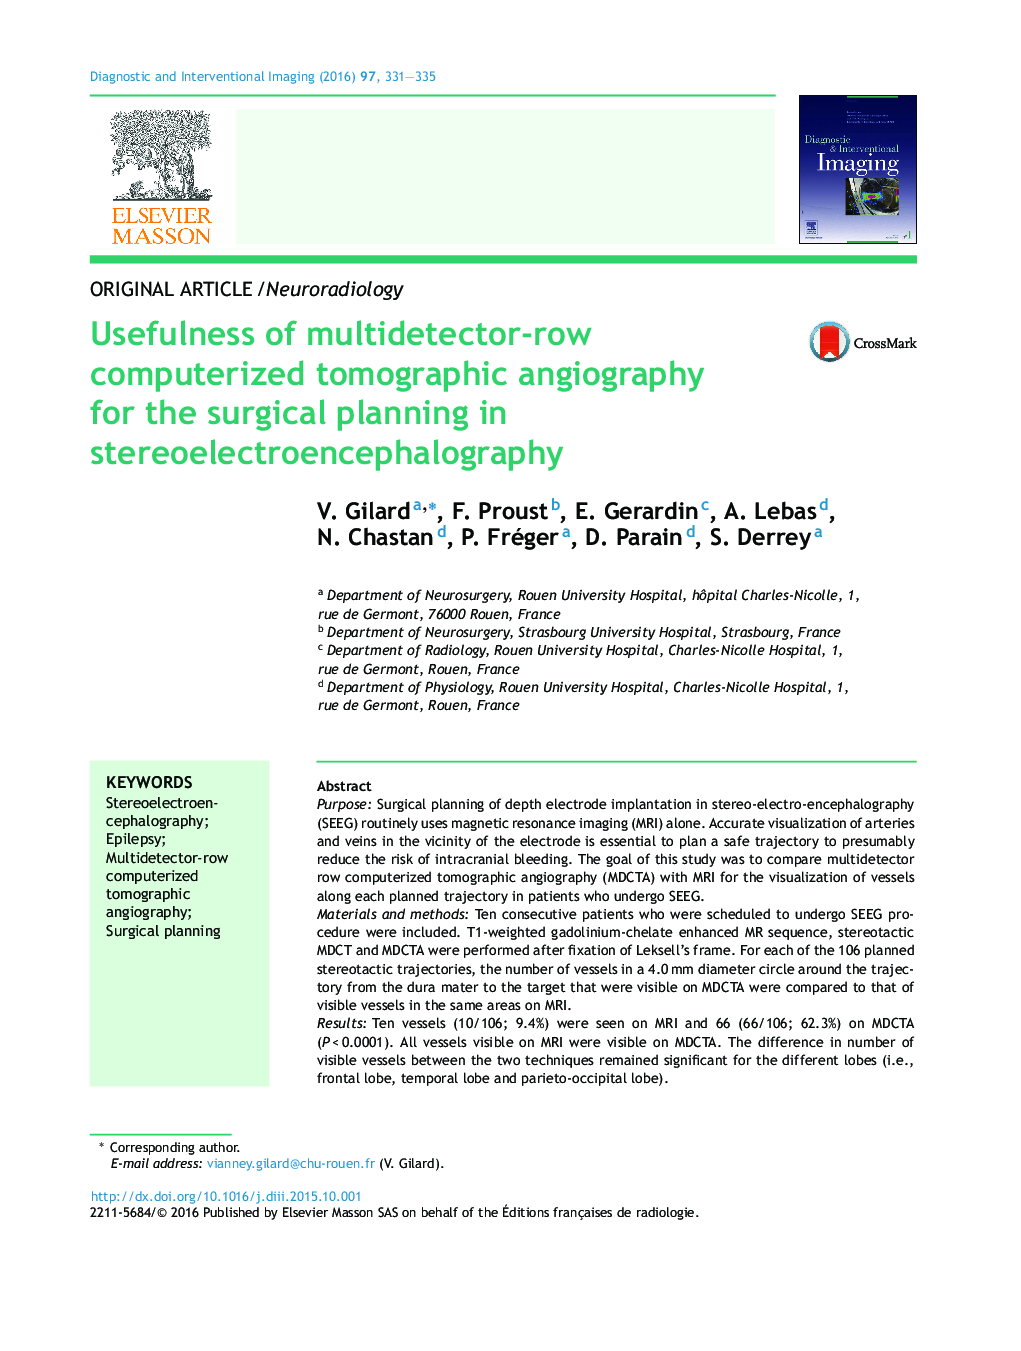 مفید بودن آنژیوگرافی توموگرافی کامپیوتری چند ردیفی ردیف برای برنامه ریزی جراحی در استروئید الکتروانسفالوگرافی 